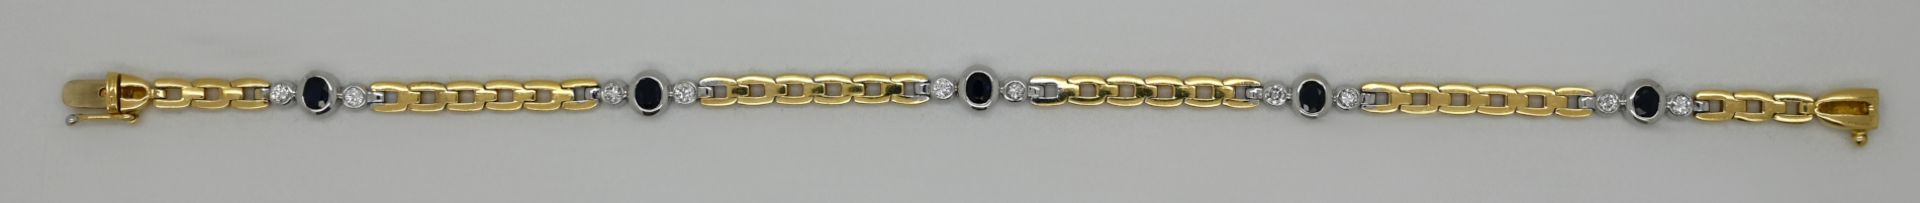 1 Damenarmband ungestempelt, wohl GG 14ct. mit Saphiren und Brillanten, Gesamtlänge ca. 20,5cm, min.